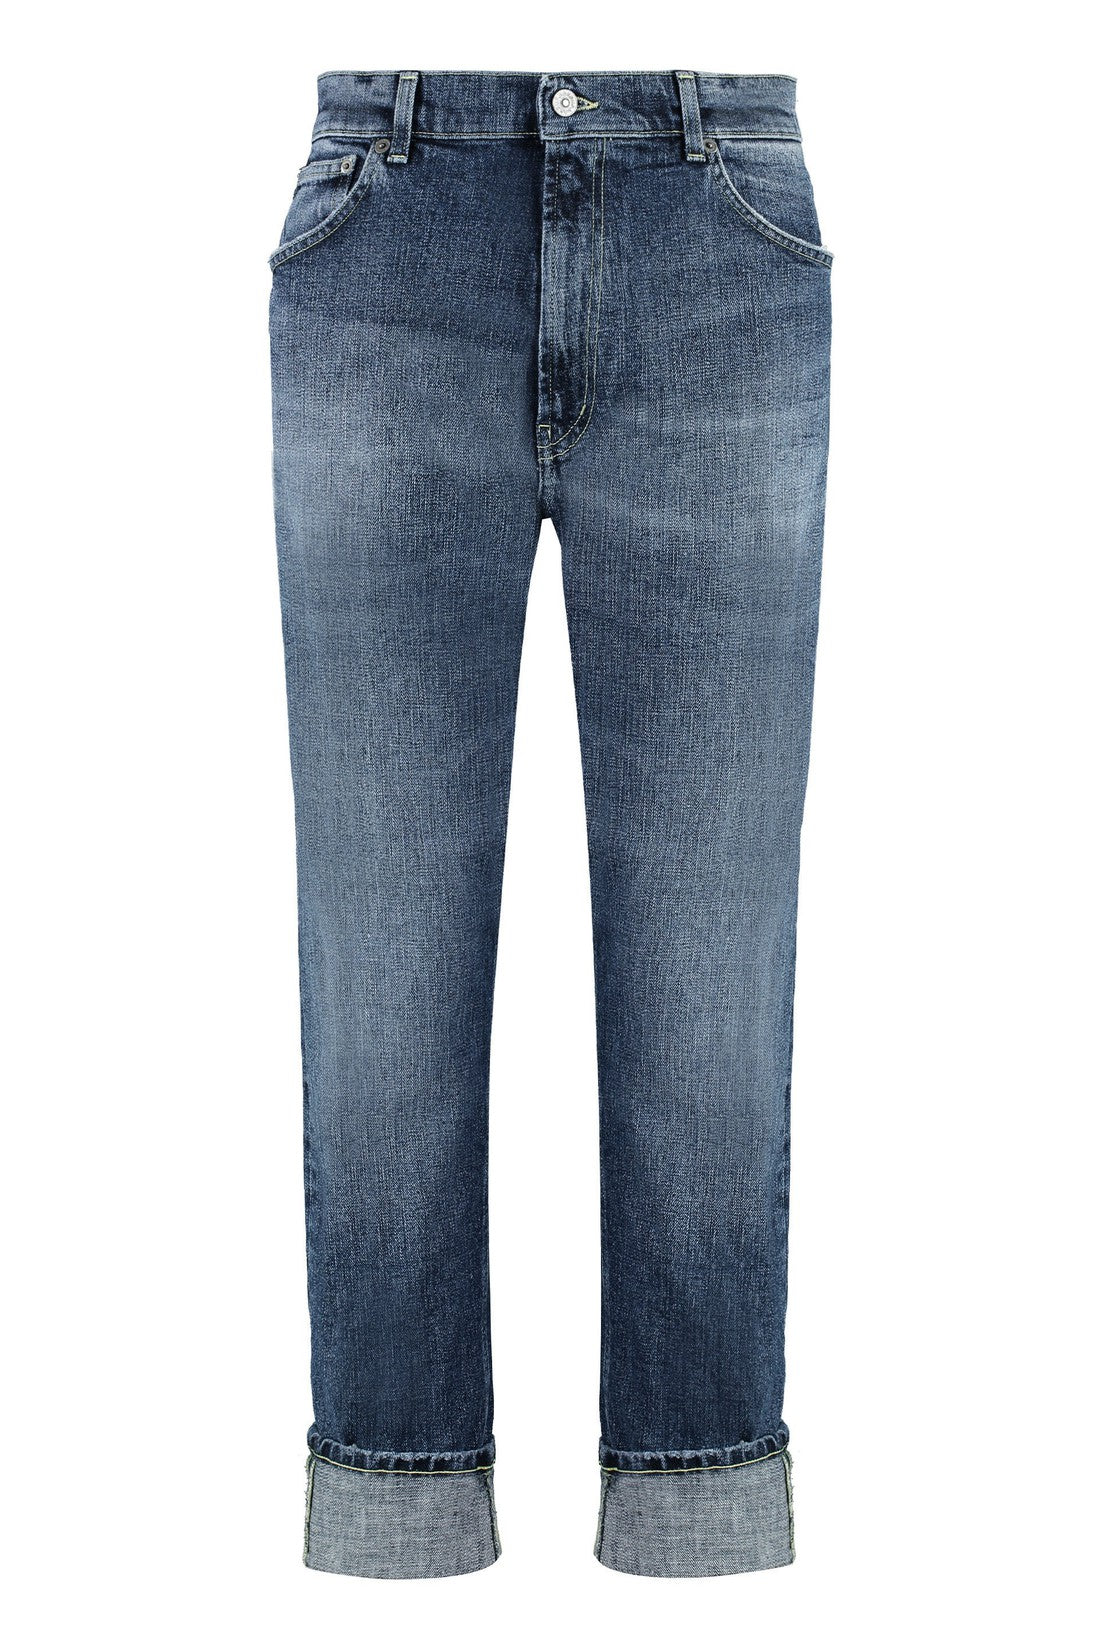 Dondup-OUTLET-SALE-Paco slim fit jeans-ARCHIVIST